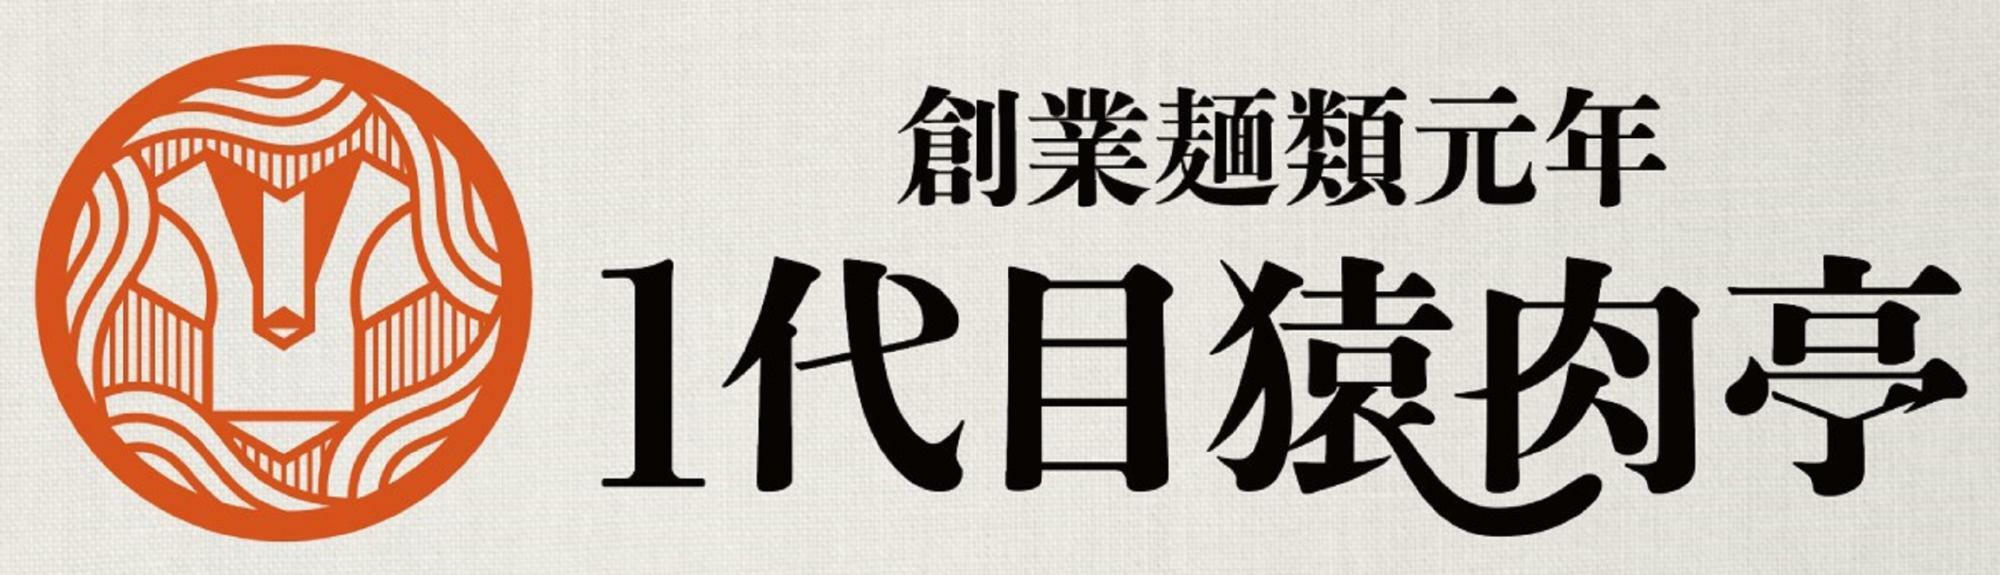 新ブランド「創業麺類元年 1代目猿肉亭」のロゴ。